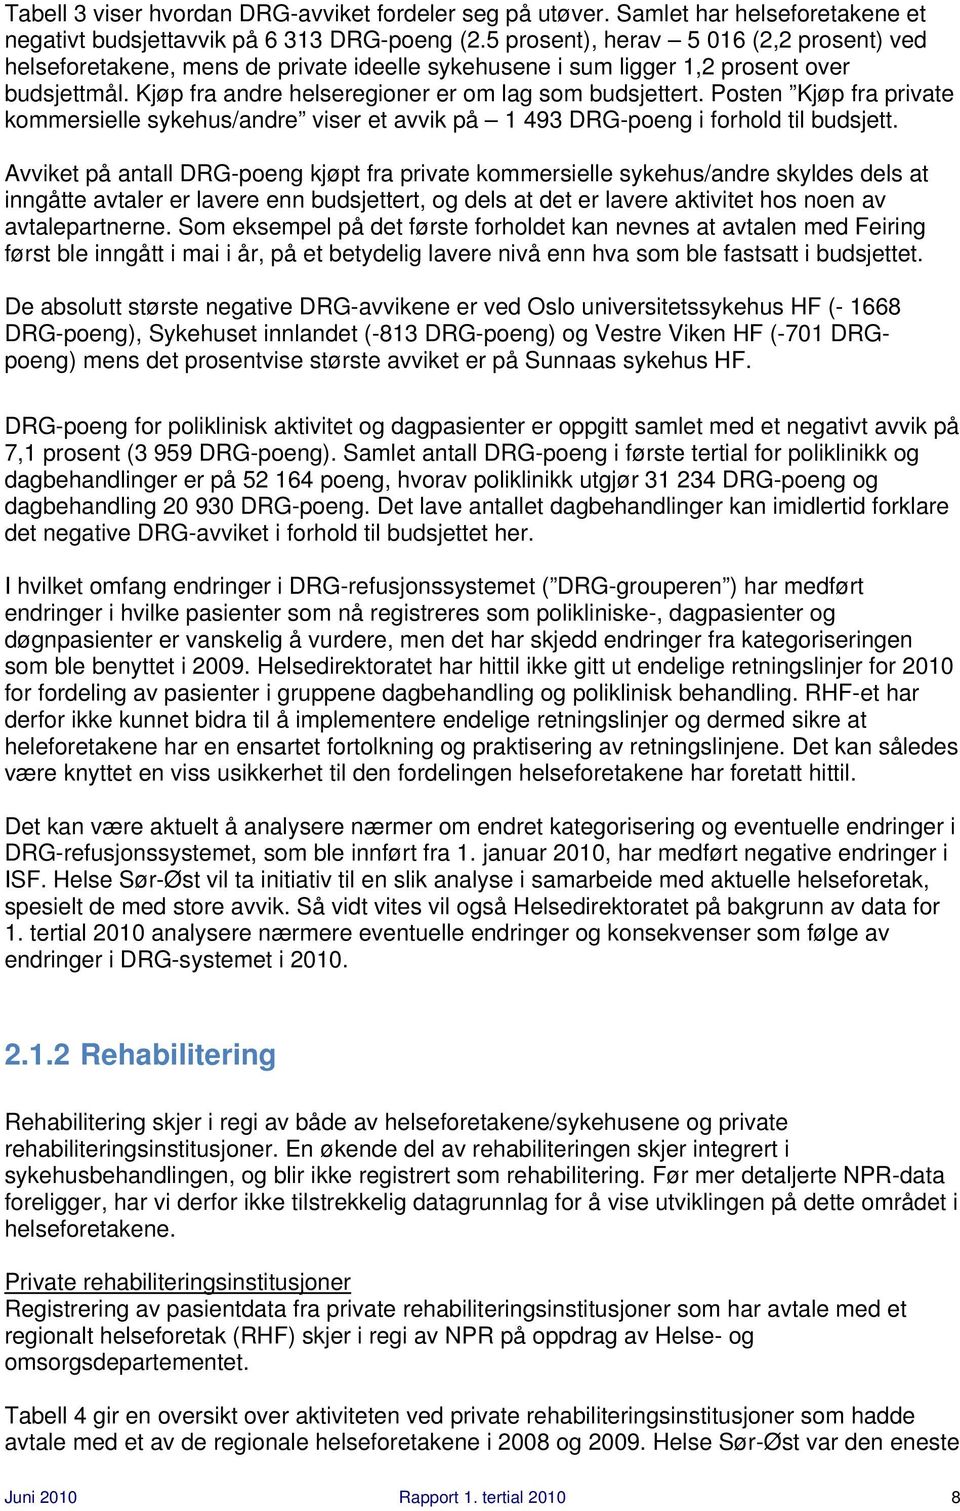 Posten Kjøp fra private kommersielle sykehus/andre viser et avvik på 1 493 DRG-poeng i forhold til budsjett.